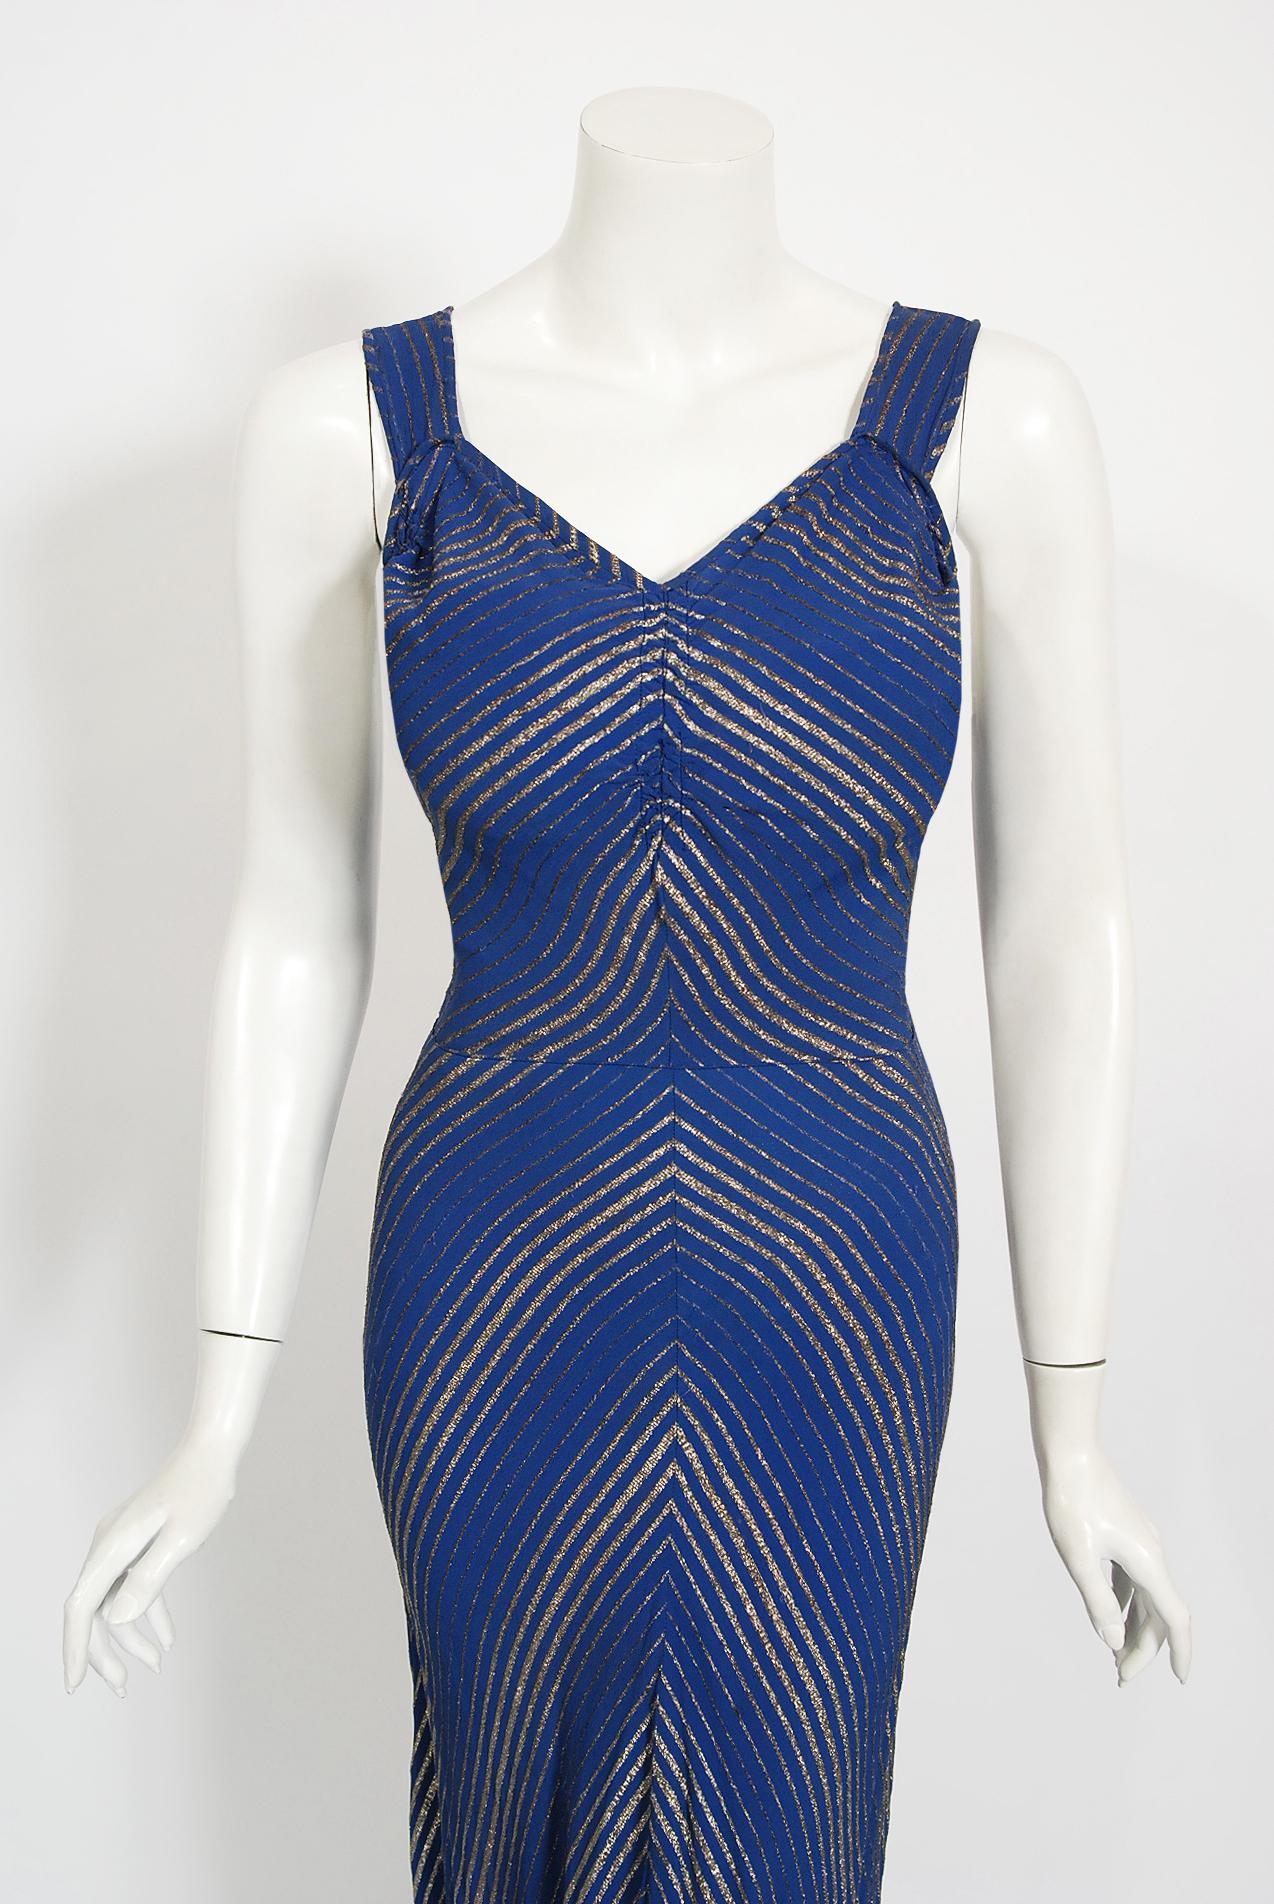 A luxurious cobalt-blue shimmer lamé evening dress from the 